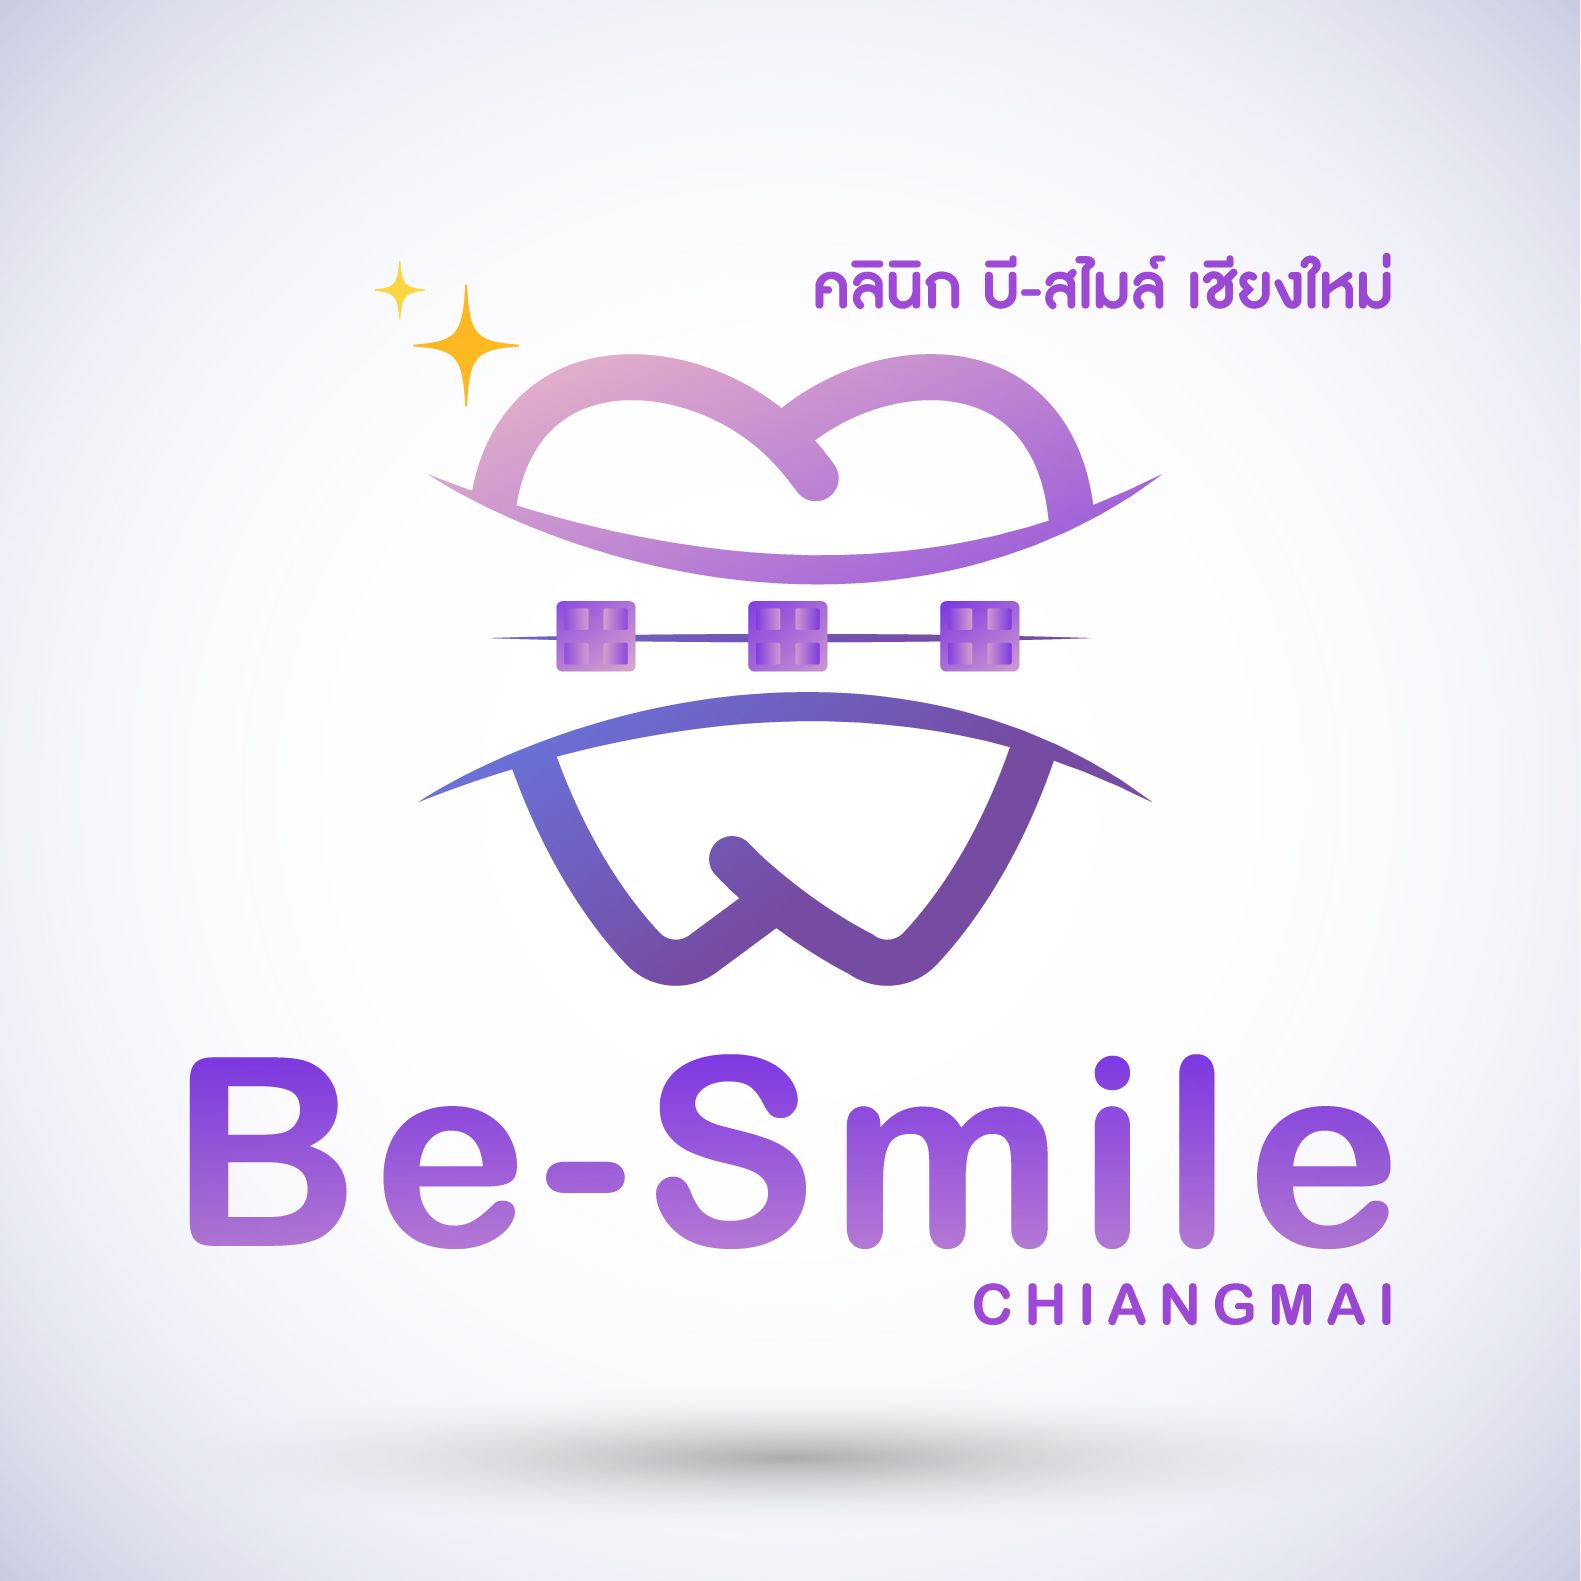 Be smile Chiangmai